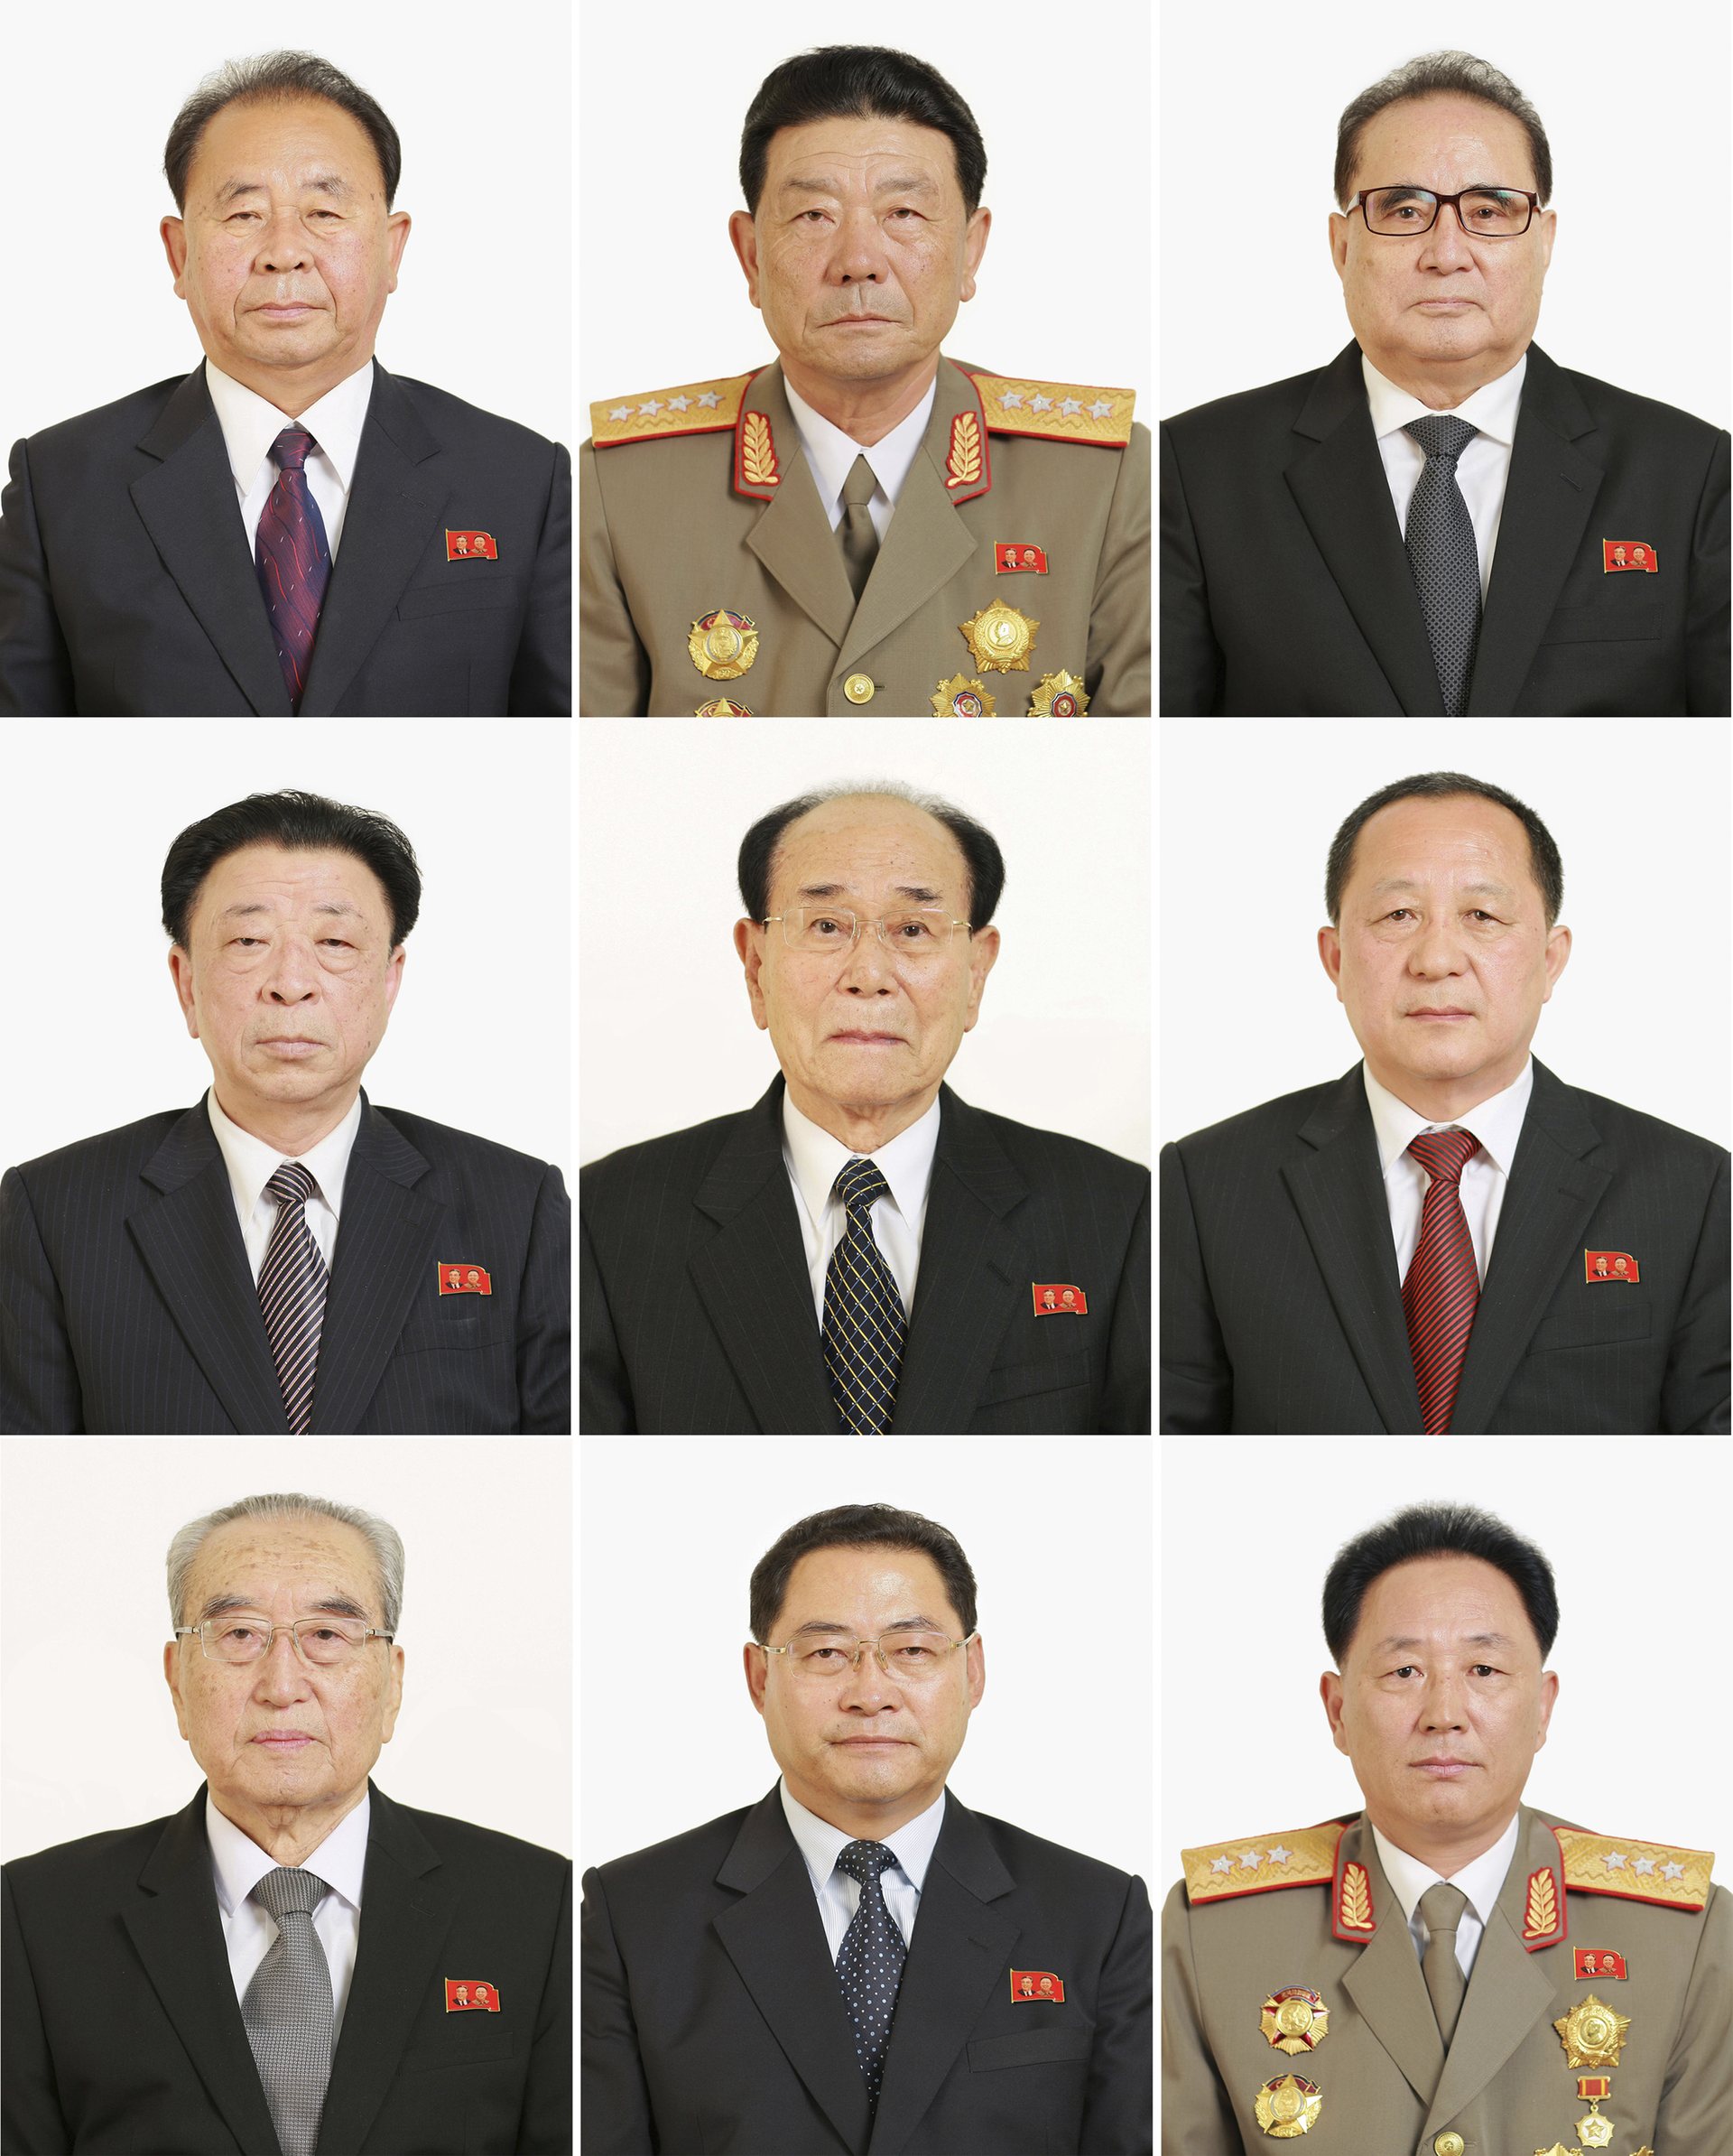 правители кореи